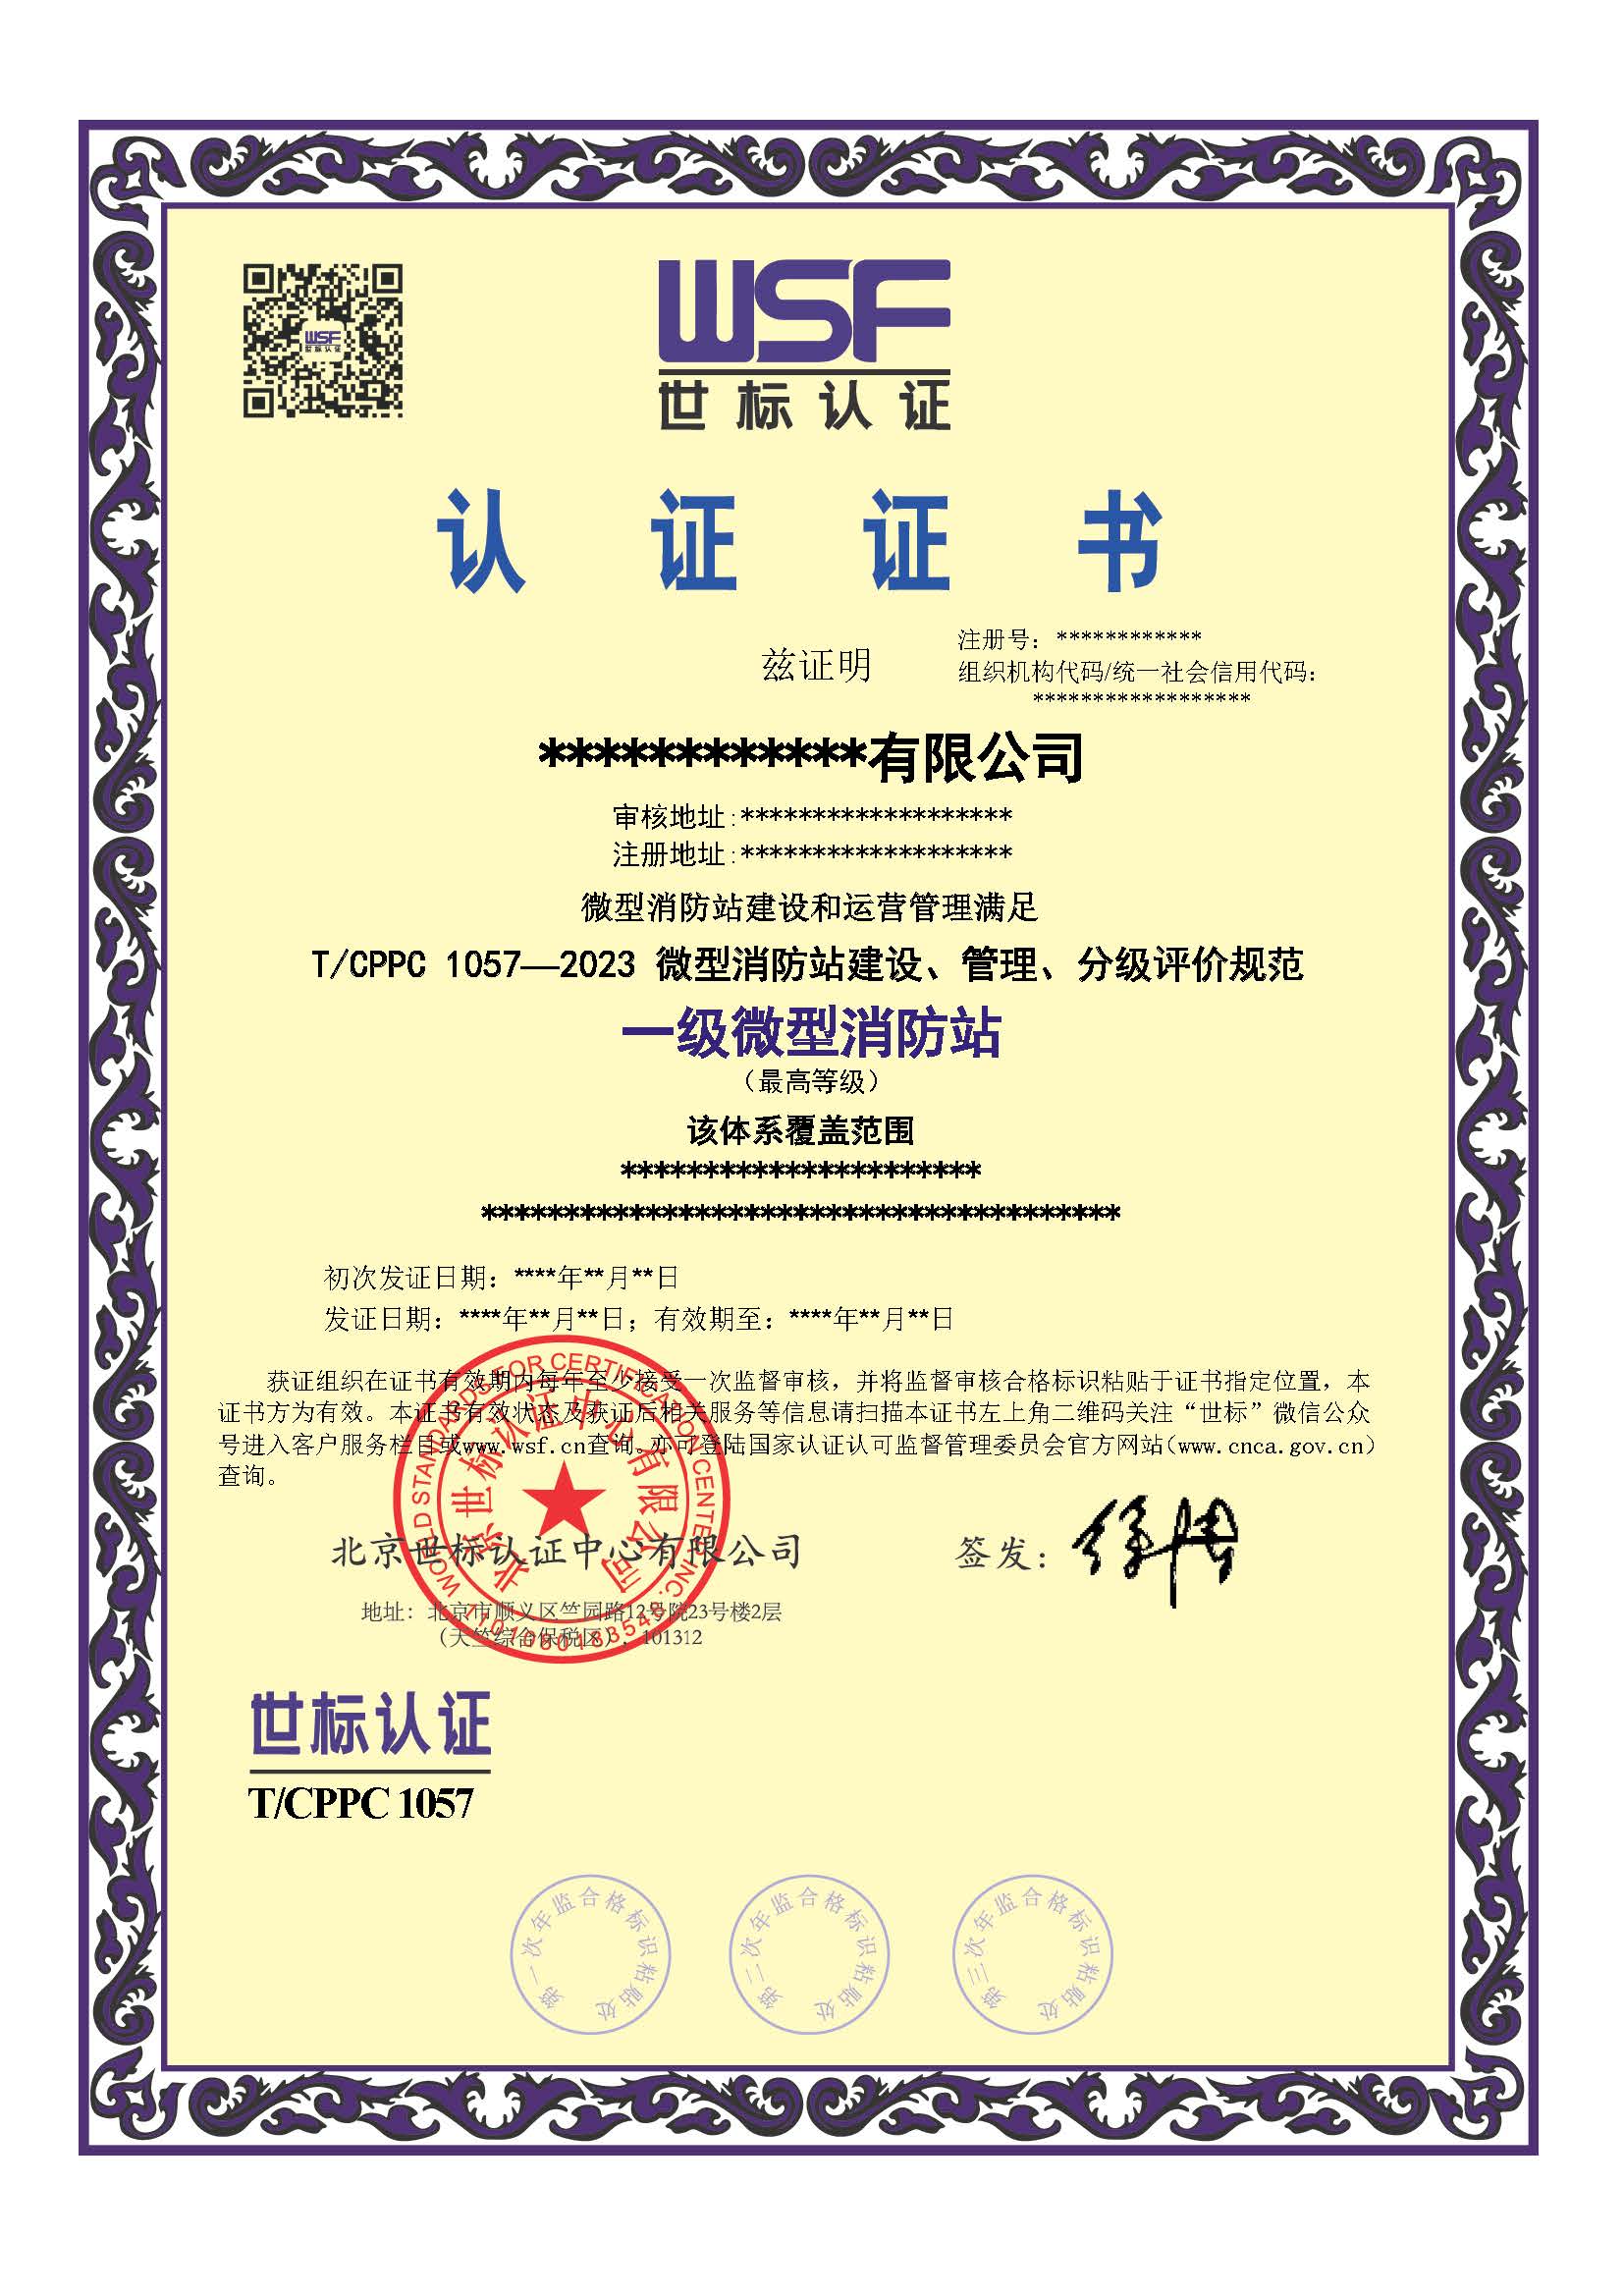 微型消防站分级认证证书样本-中文.jpg